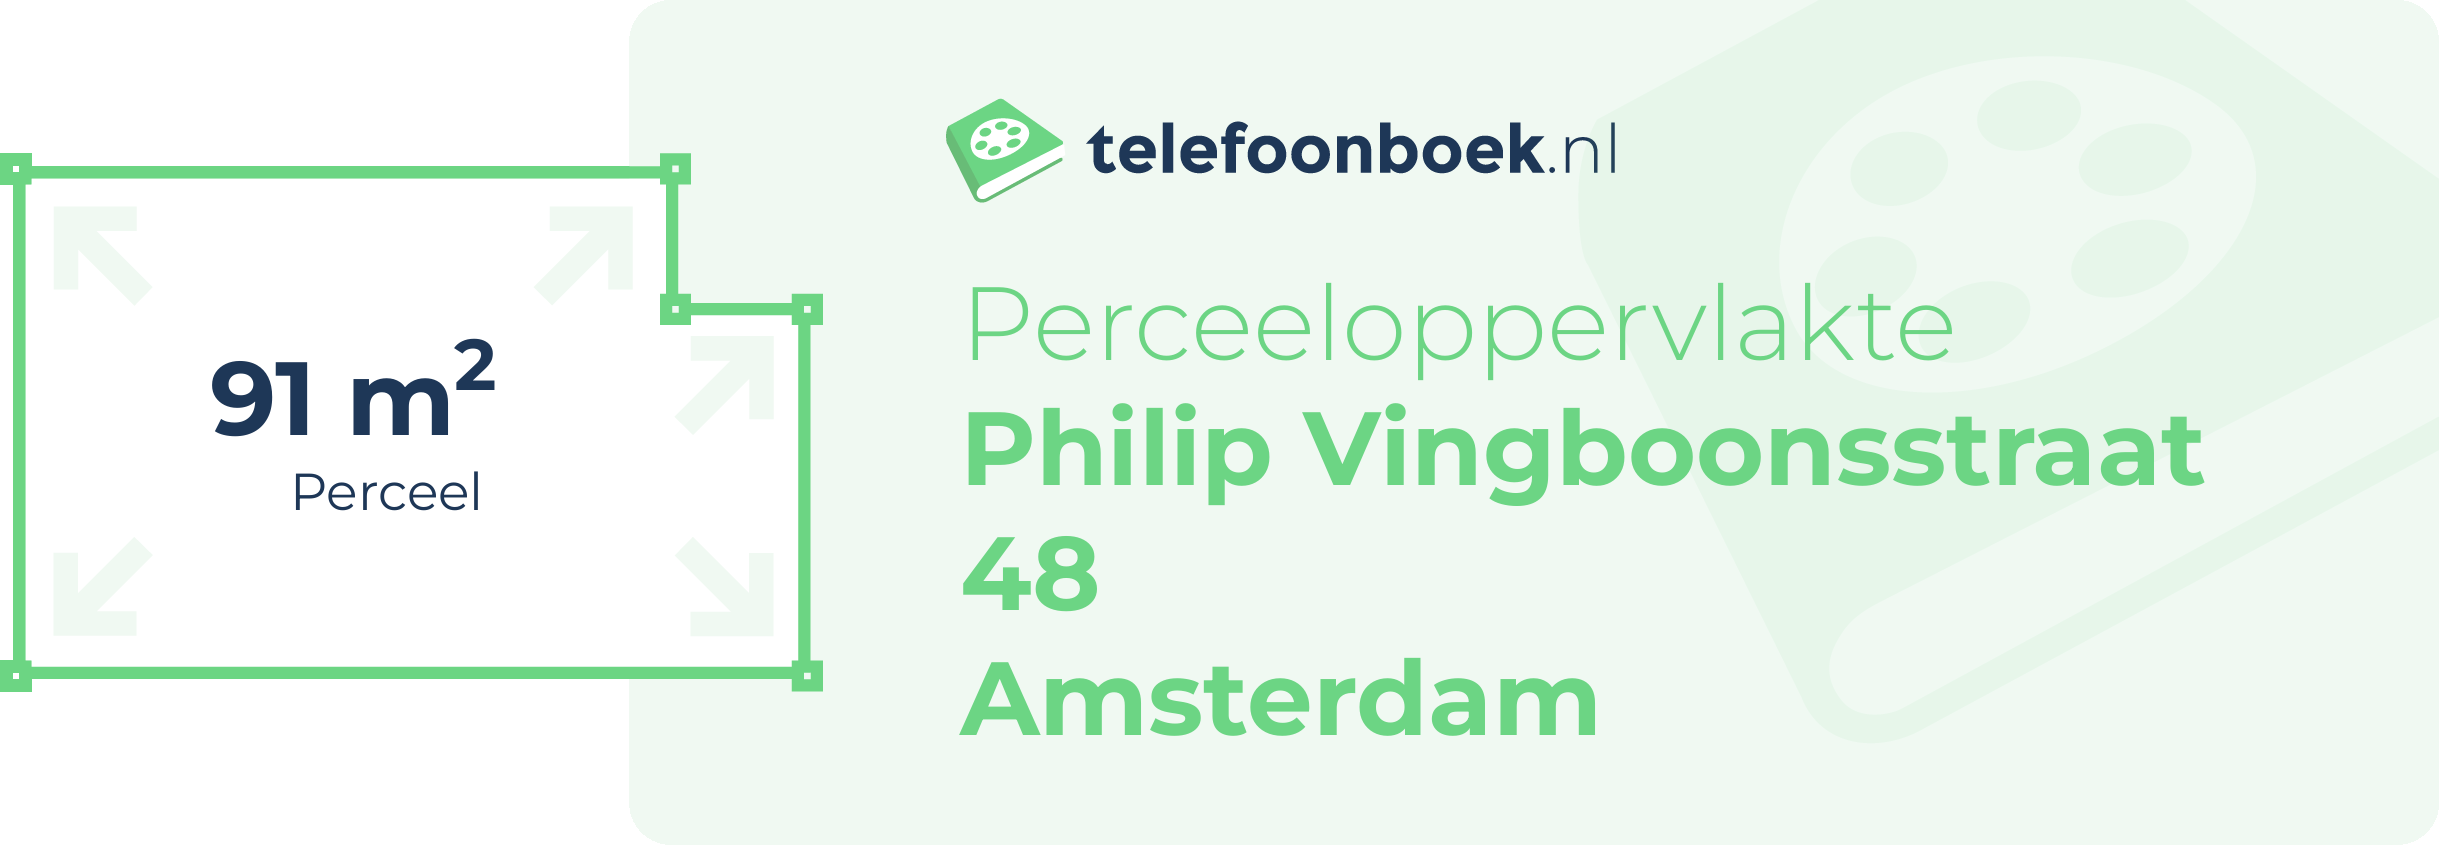 Perceeloppervlakte Philip Vingboonsstraat 48 Amsterdam